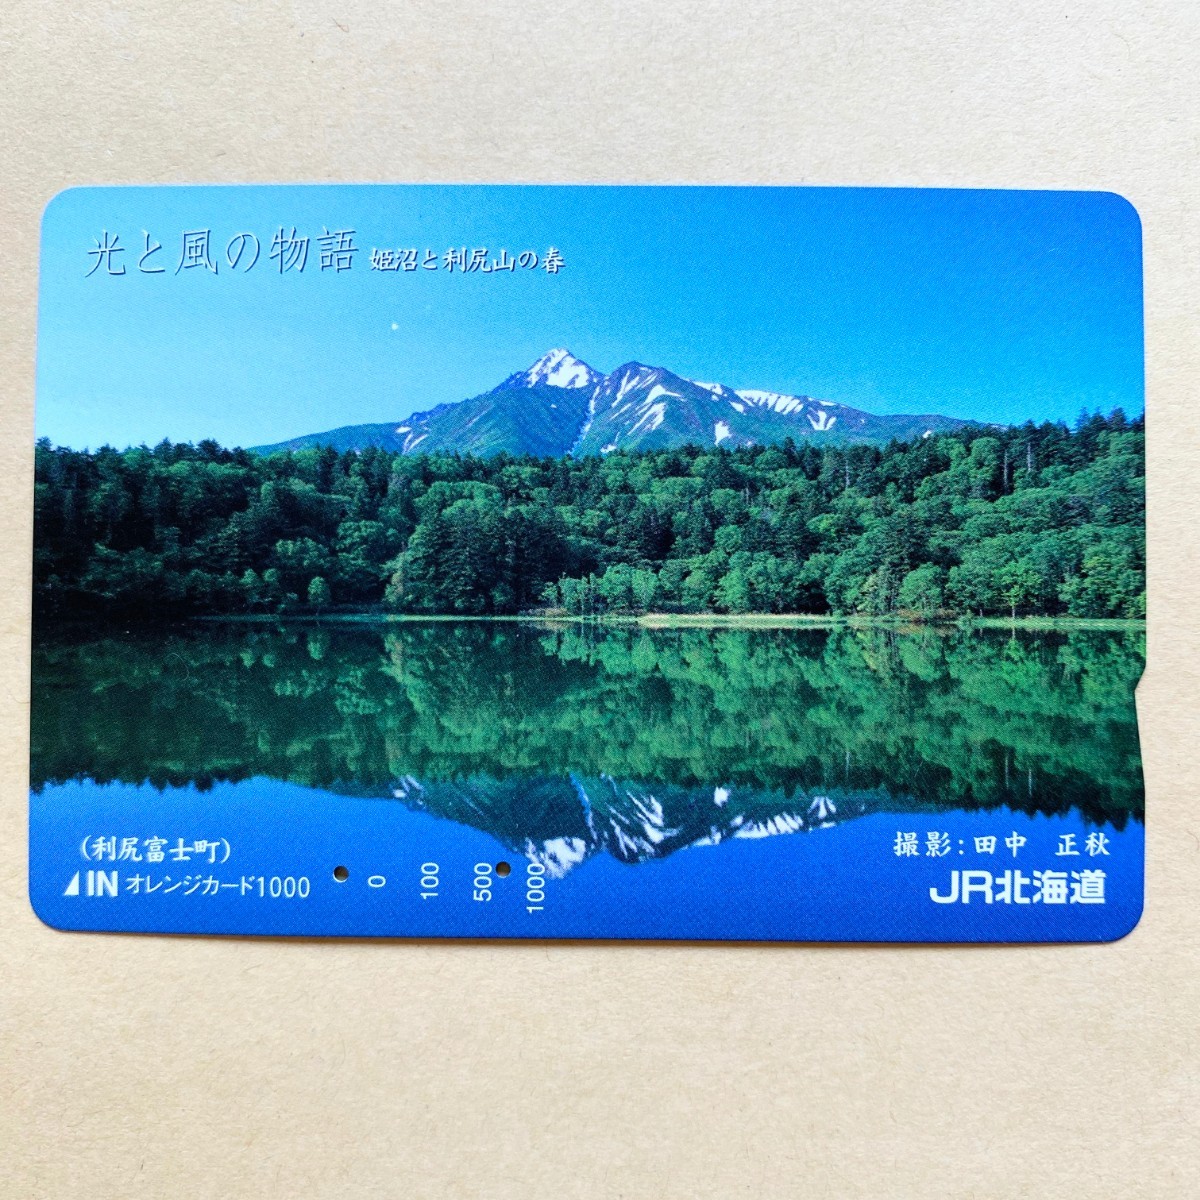 【使用済】 オレンジカード JR北海道 光と風の物語 姫沼と利尻山の春の画像1